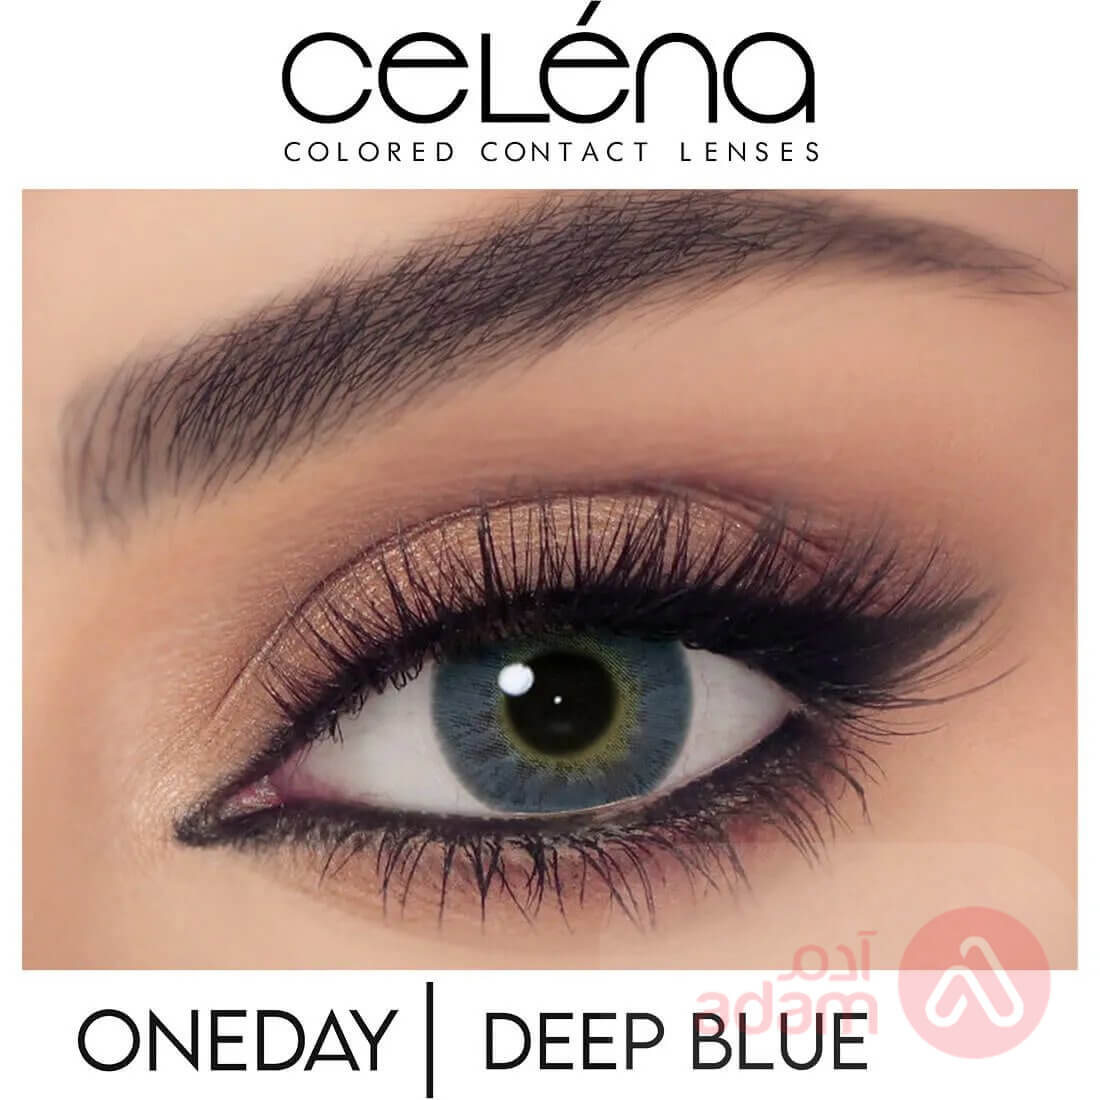 Celena Daily Deep Blue